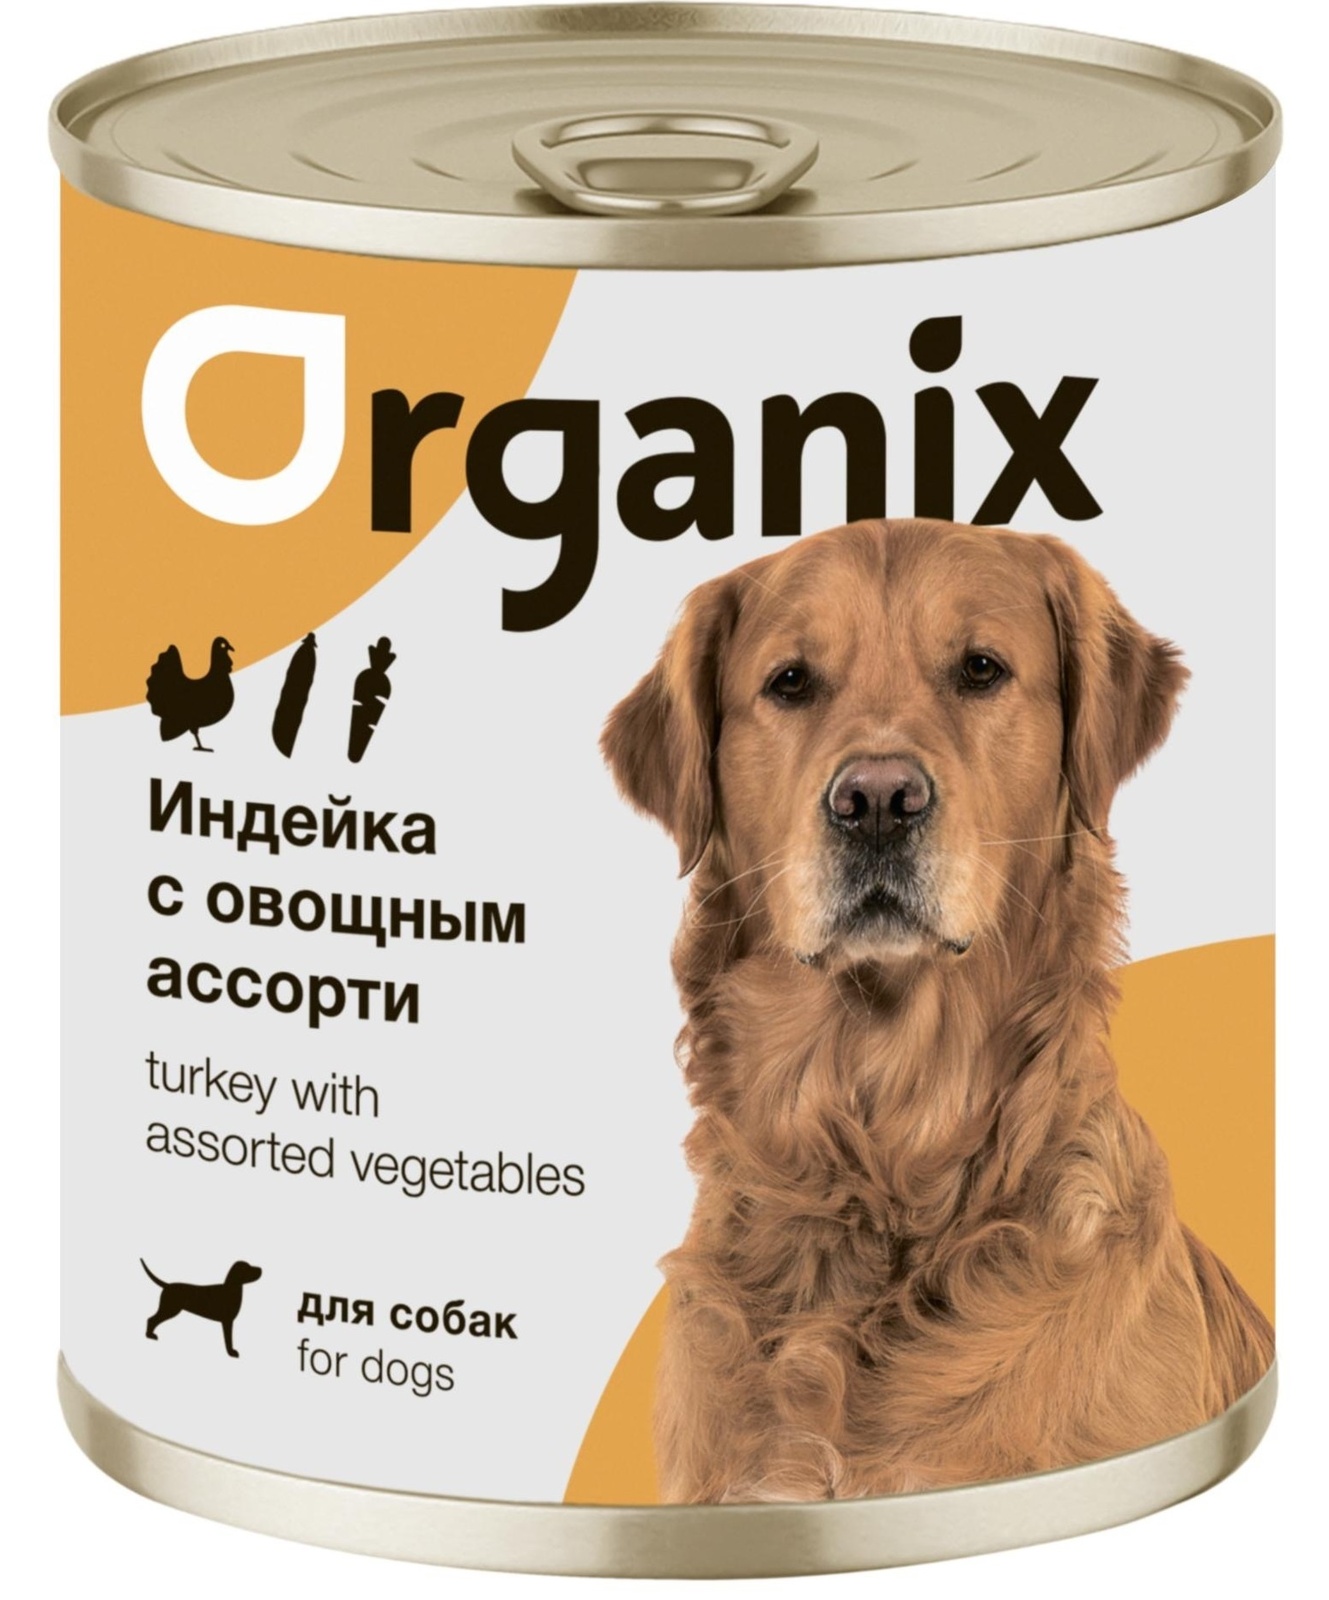 Organix консервы Organix консервы для собак Индейка с овощным ассорти (400 г) organix консервы organix консервы для собак заливное из говядины с черникой 400 г